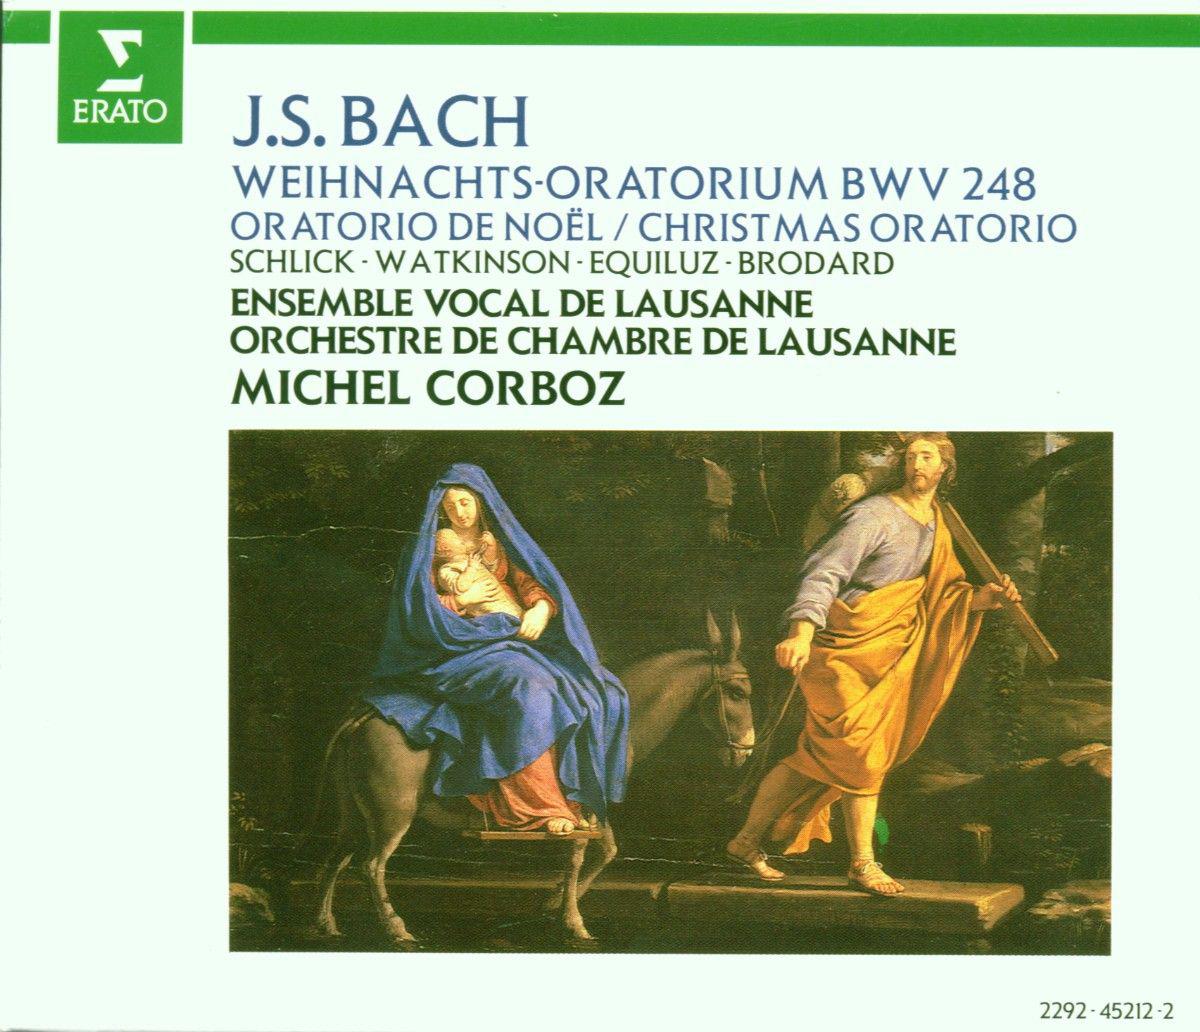 Weihnachtsoratorium, BWV 248, Pt. 1:No. 9, Choral. "Ach mein herzliebes Jesulein"